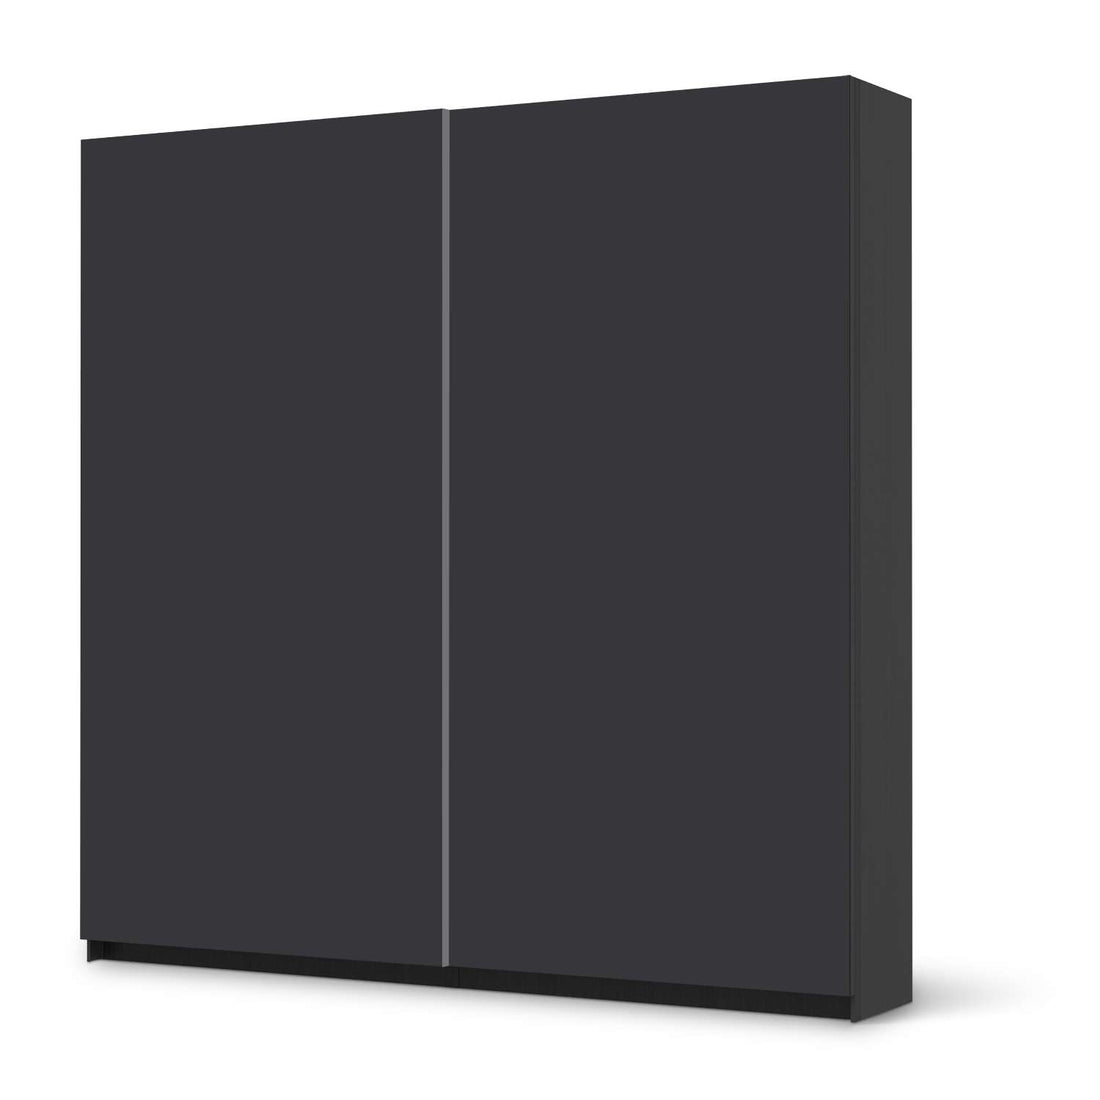 Möbel Klebefolie Grau Dark - IKEA Pax Schrank 201 cm Höhe - Schiebetür - schwarz